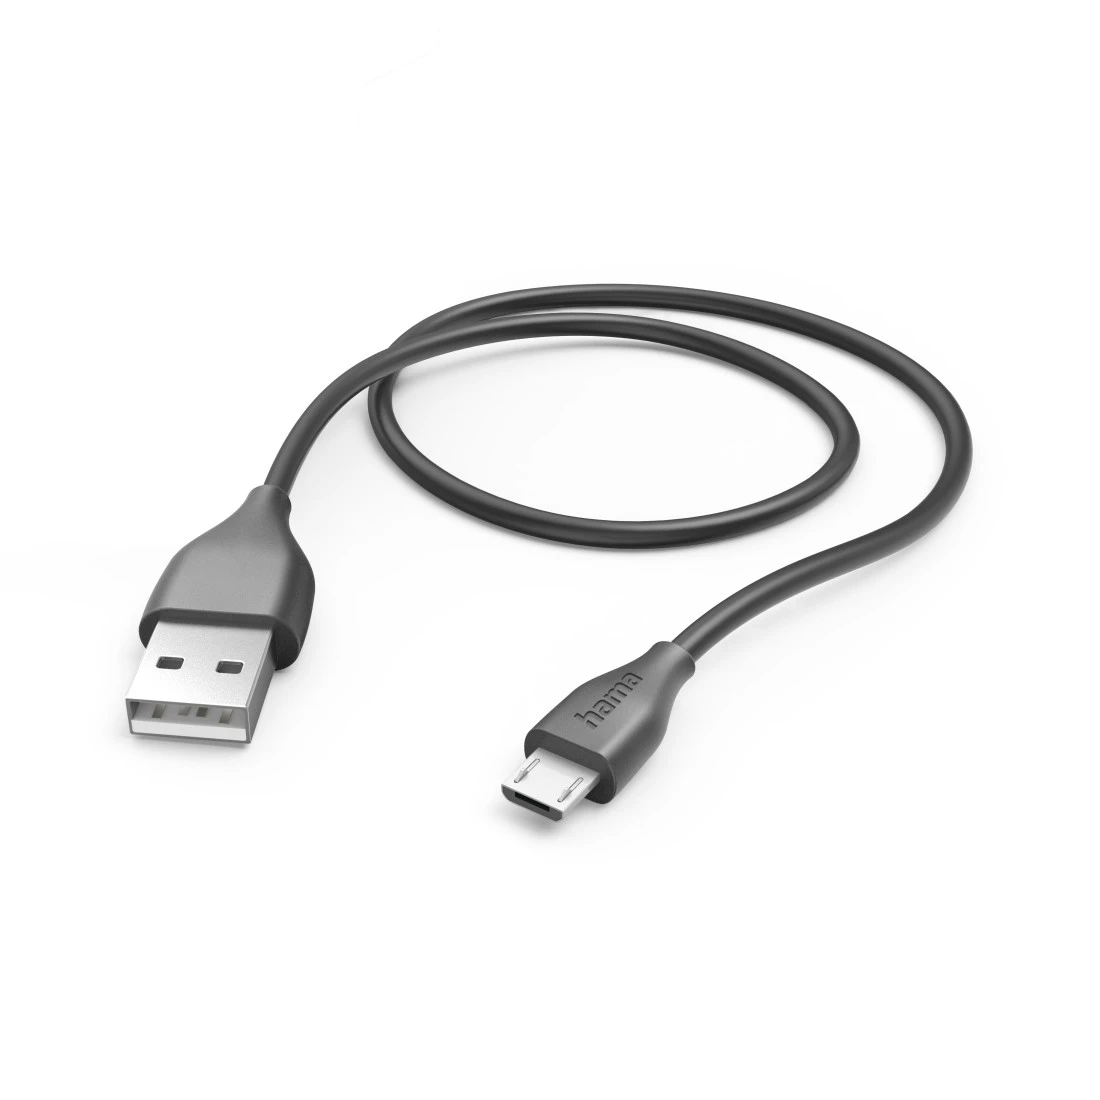 Ladekabel, USB-A - Micro-USB, 1,5 m, Schwarz | Hama